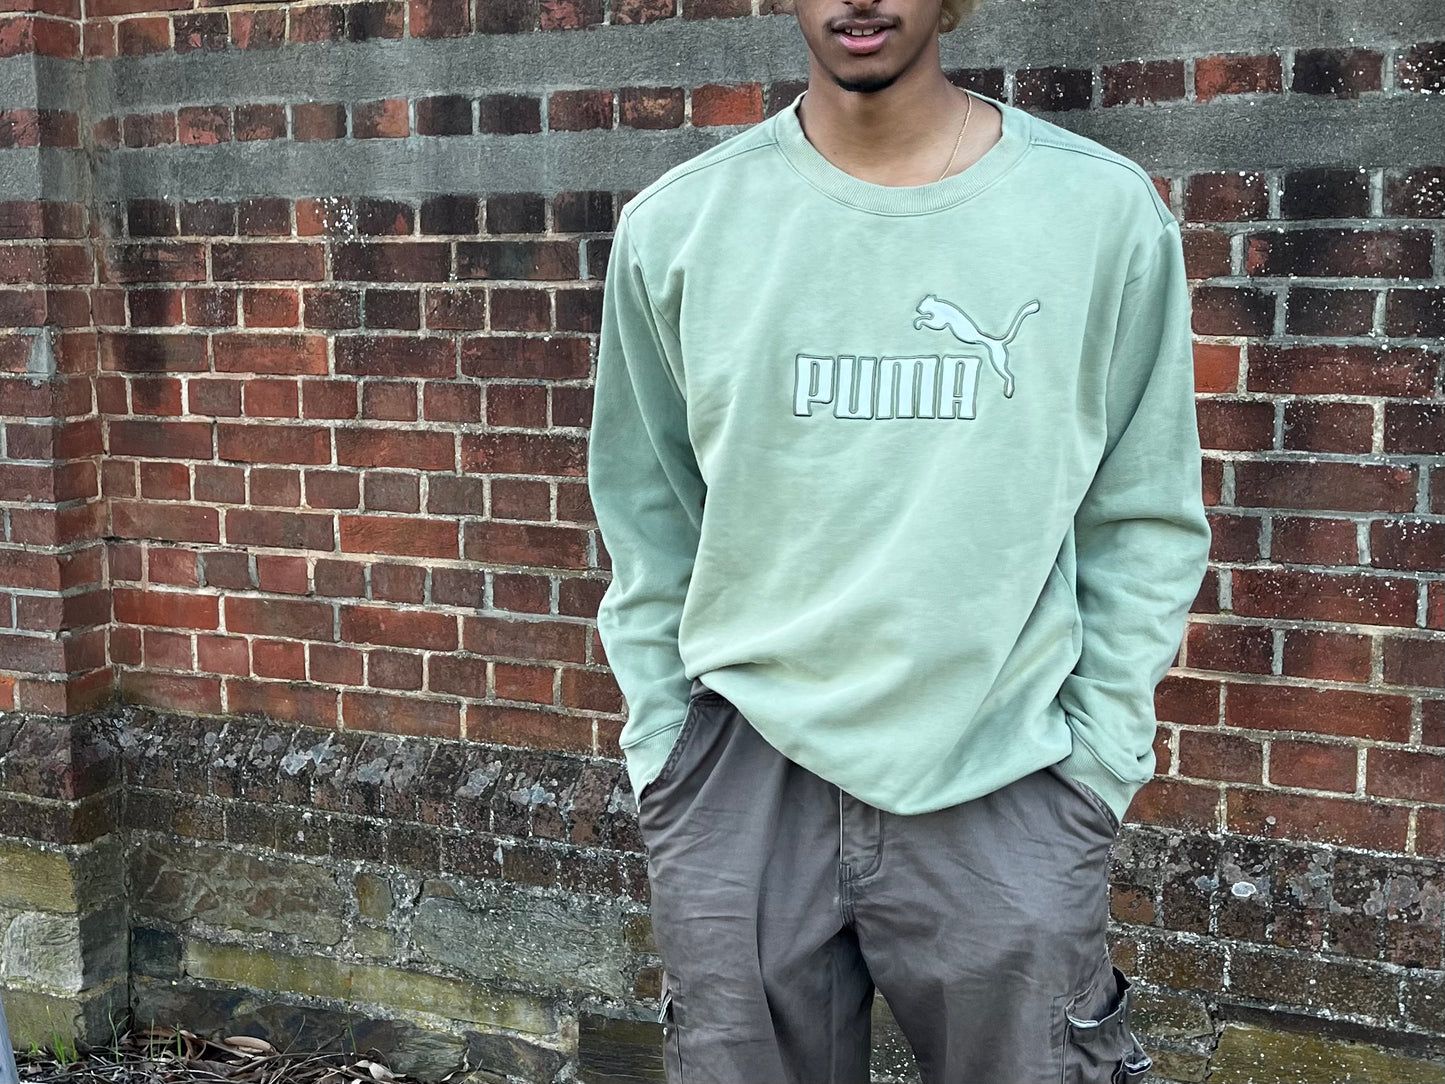 L Puma sweatshirt